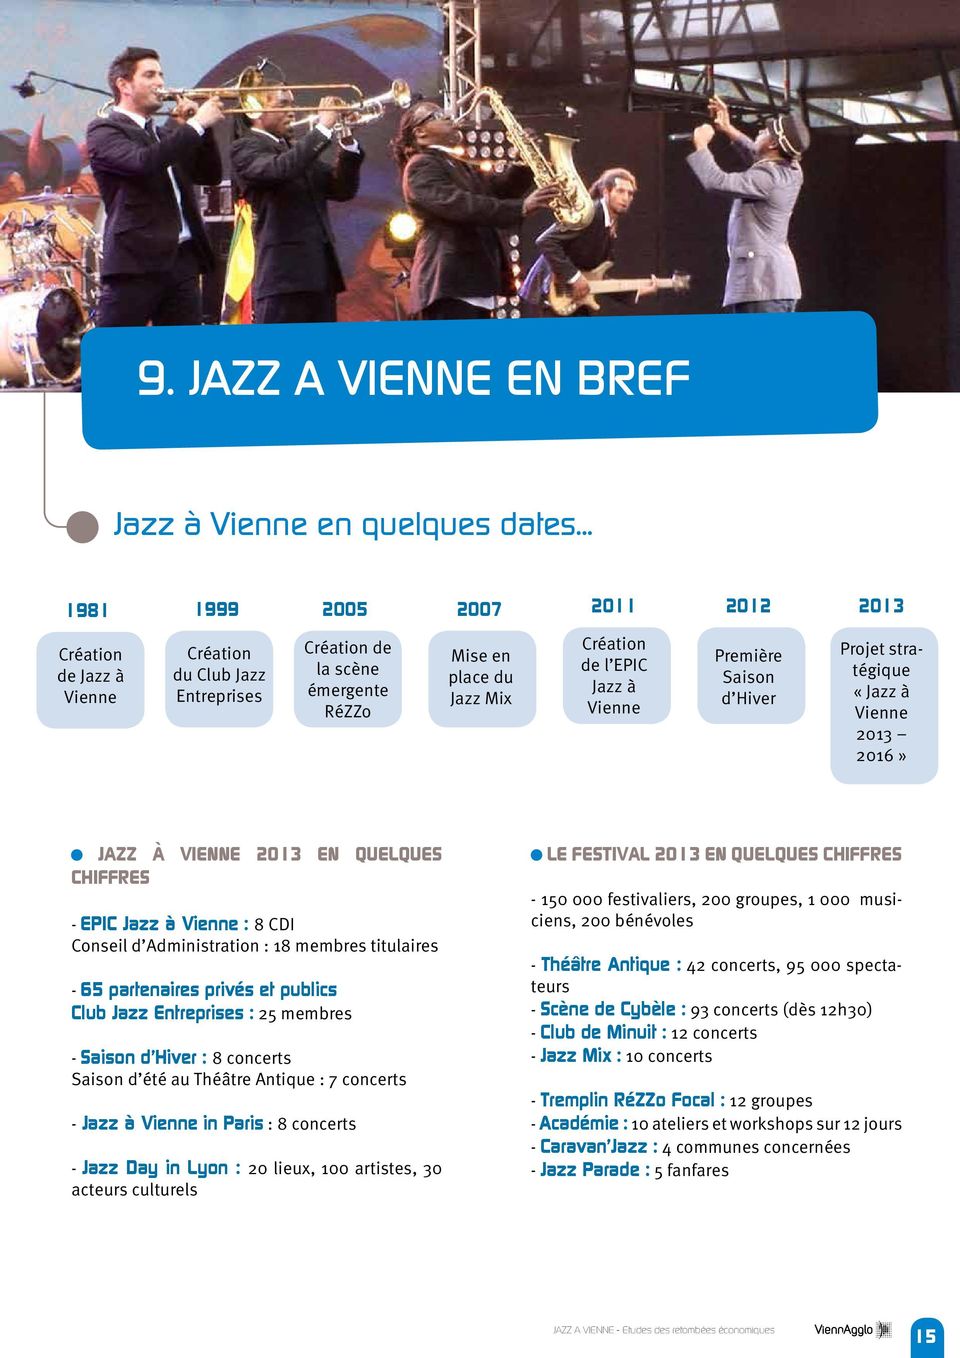 Première Saison d Hiver Projet stratégique «Jazz à Vienne 2013 2016» JAZZ À VIENNE 2013 EN QUELQUES CHIFFRES - EPIC Jazz à Vienne : 8 CDI Conseil d Administration : 18 membres titulaires - 65